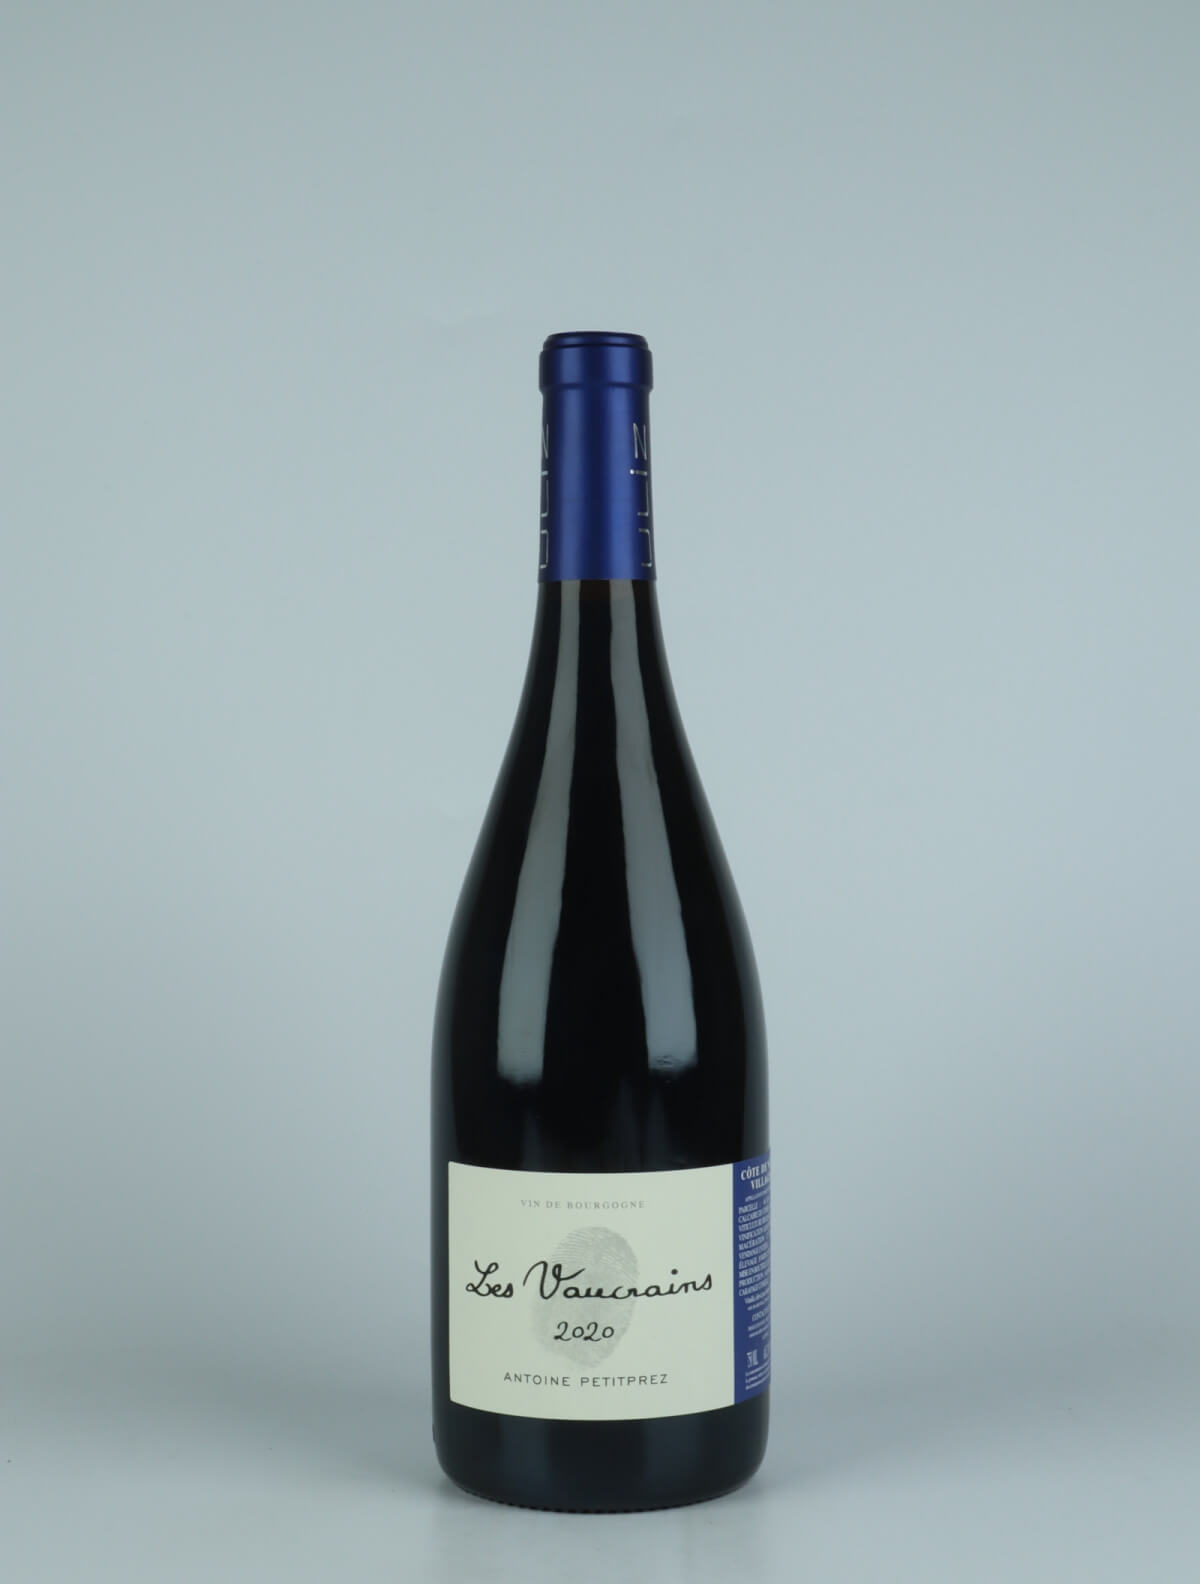 A bottle 2020 Côtes de Nuits Villages - Les Vaucrains Red wine from Antoine Petitprez, Burgundy in France